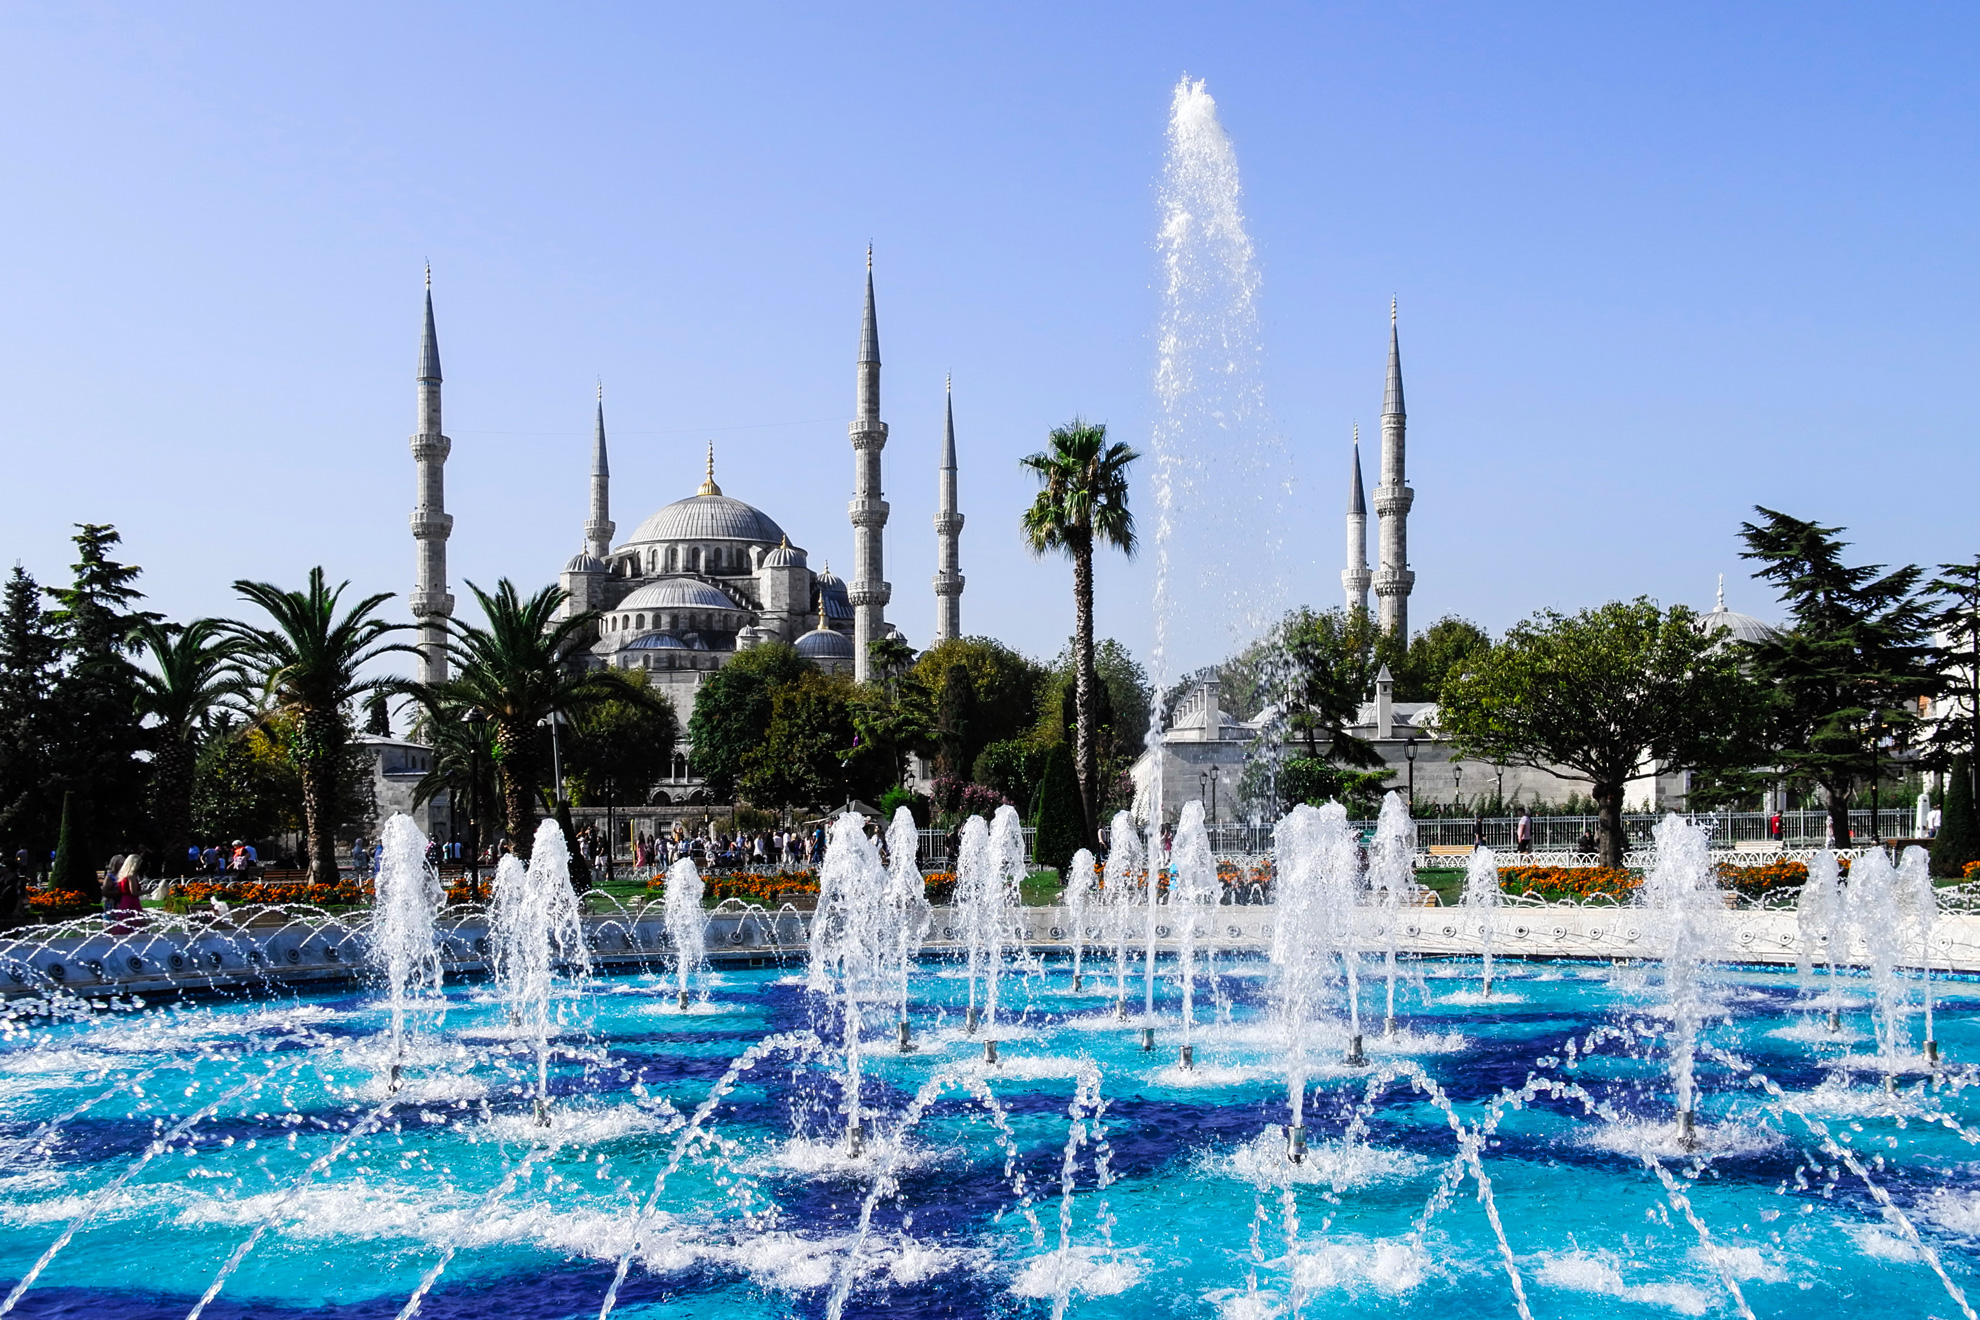 Фестивалът на лалето в Истанбул, 2 нощувки - Синята джамия (Султан Ахмед), Истанбул, Турция - The Blue Mosque (Sultan Ahmed), Istanbul, Turkey